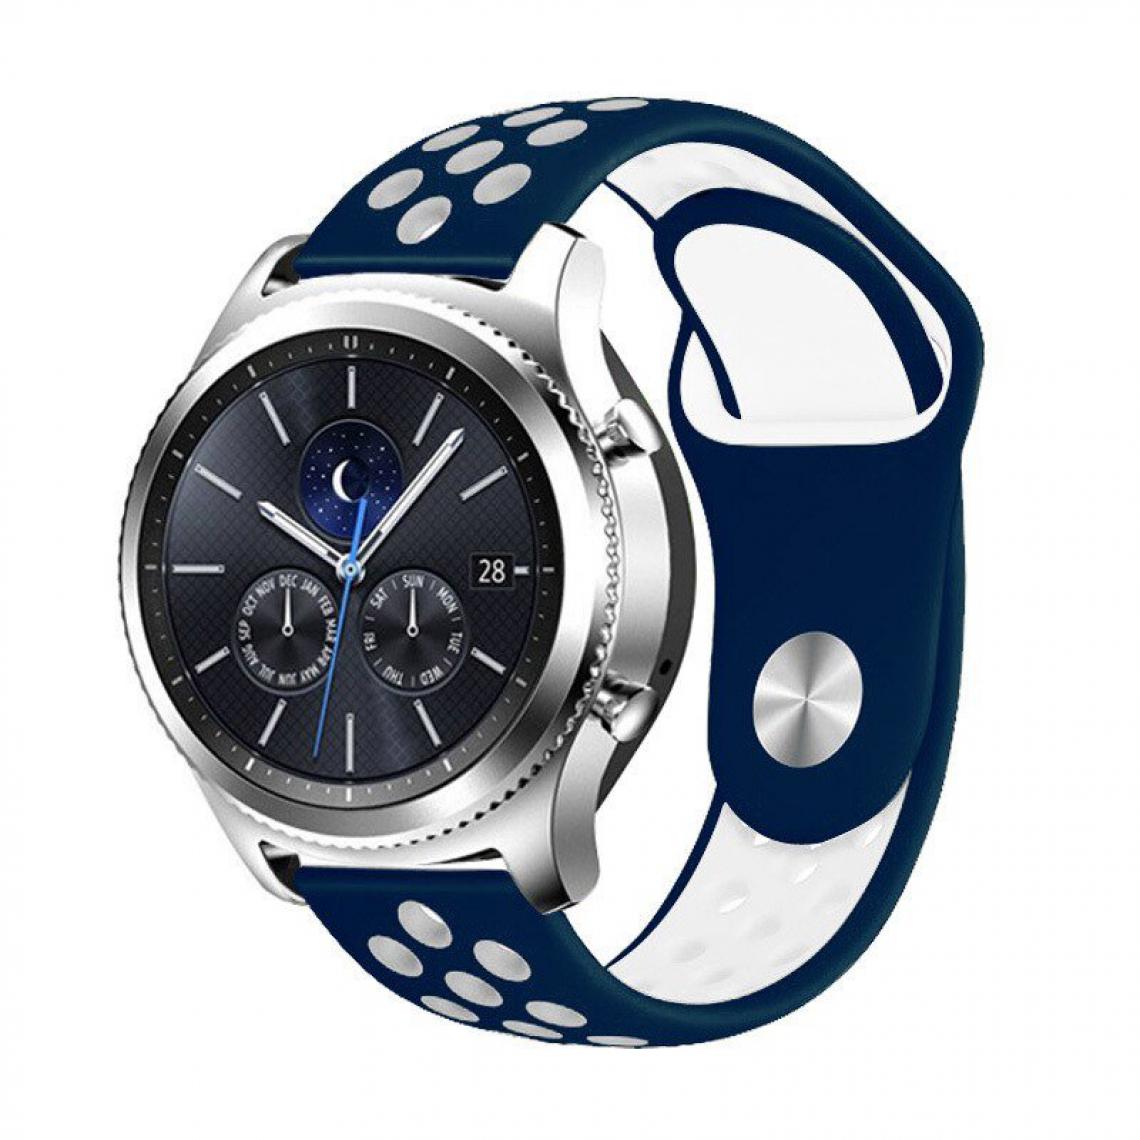 Phonecare - Bracelet SportyStyle pour Garmin Marq Commander - Bleu foncé / Blanc - Autres accessoires smartphone